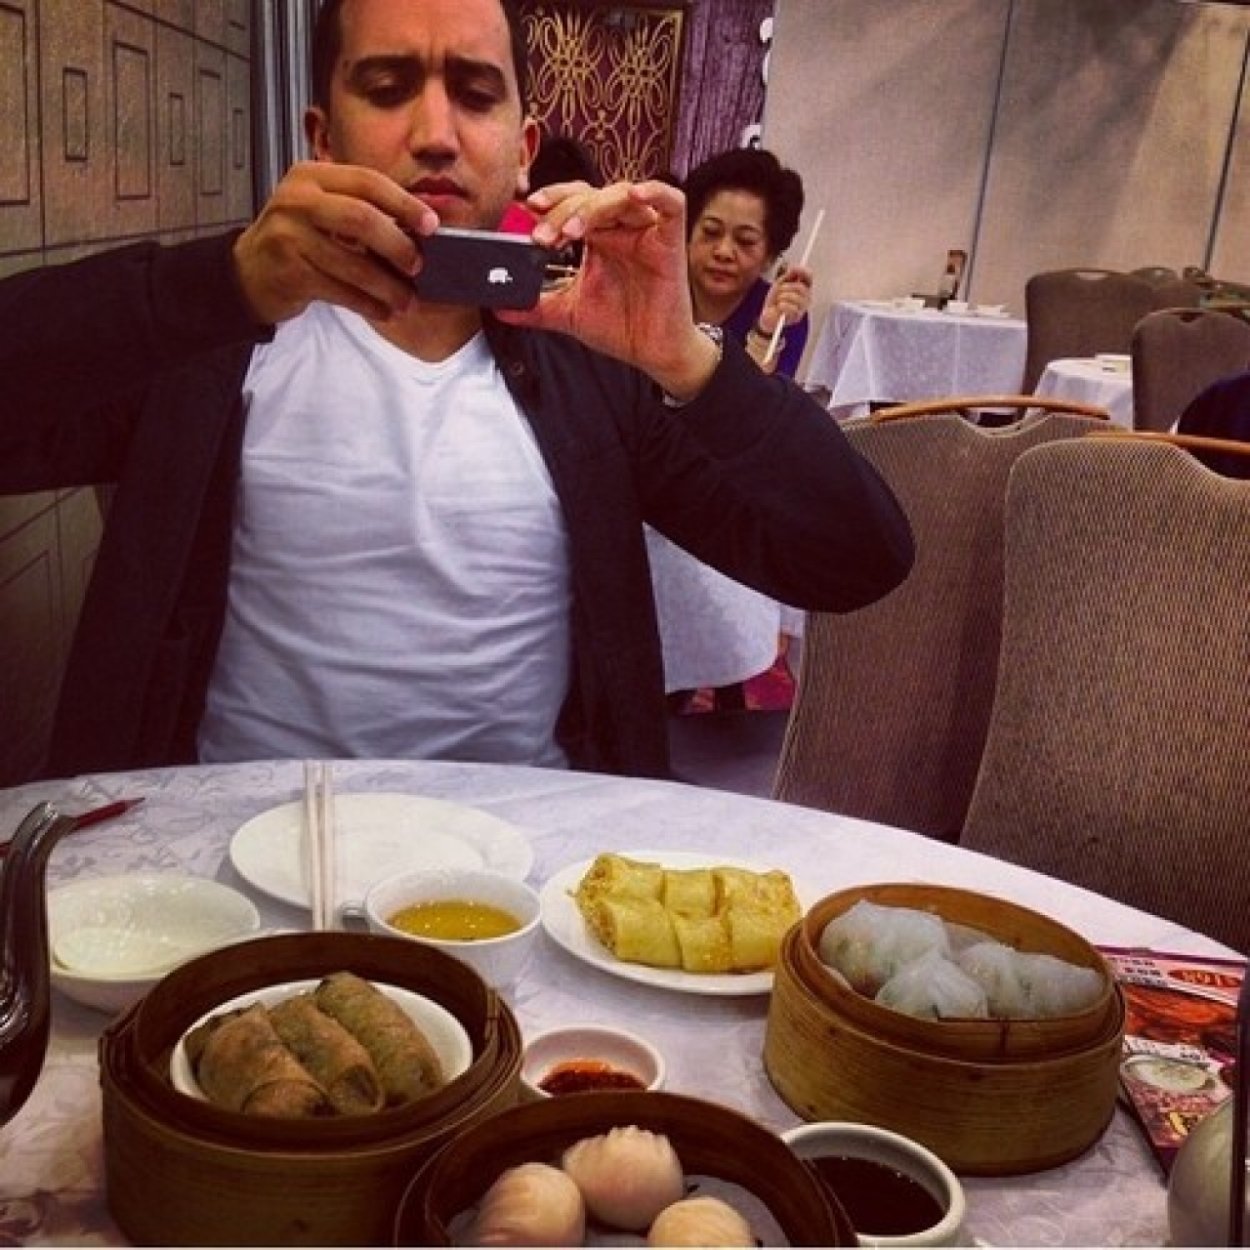 Akrepoxhi instagram. Селфи еды в кафе. Селфи с едой. Селфи в кафе. Селфи в кофейне.